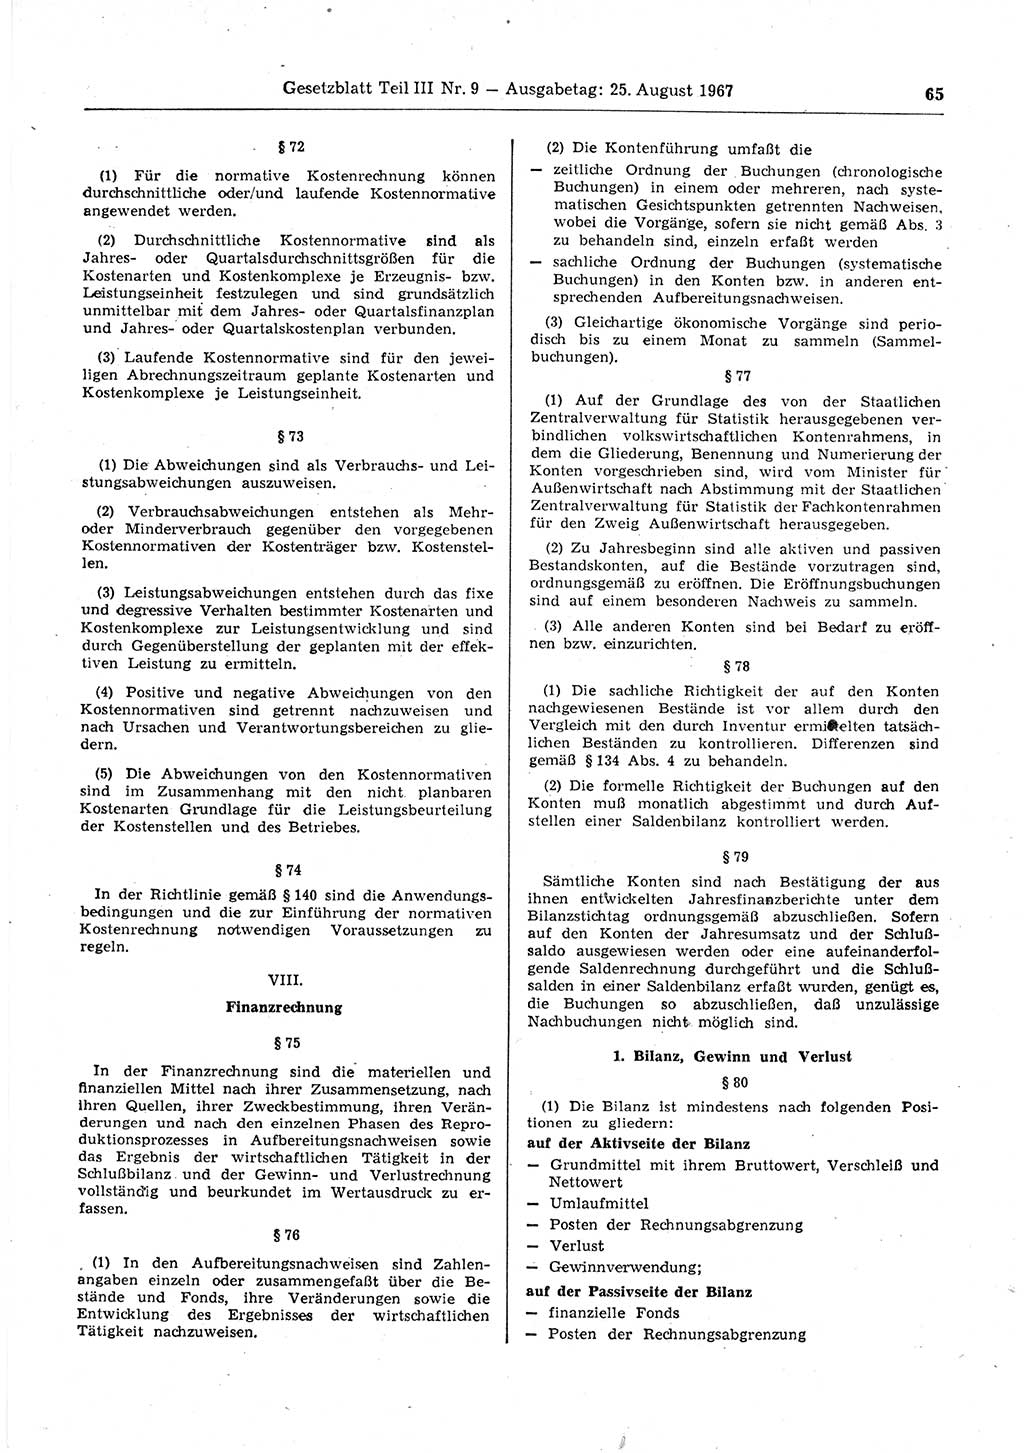 Gesetzblatt (GBl.) der Deutschen Demokratischen Republik (DDR) Teil ⅠⅠⅠ 1967, Seite 65 (GBl. DDR ⅠⅠⅠ 1967, S. 65)